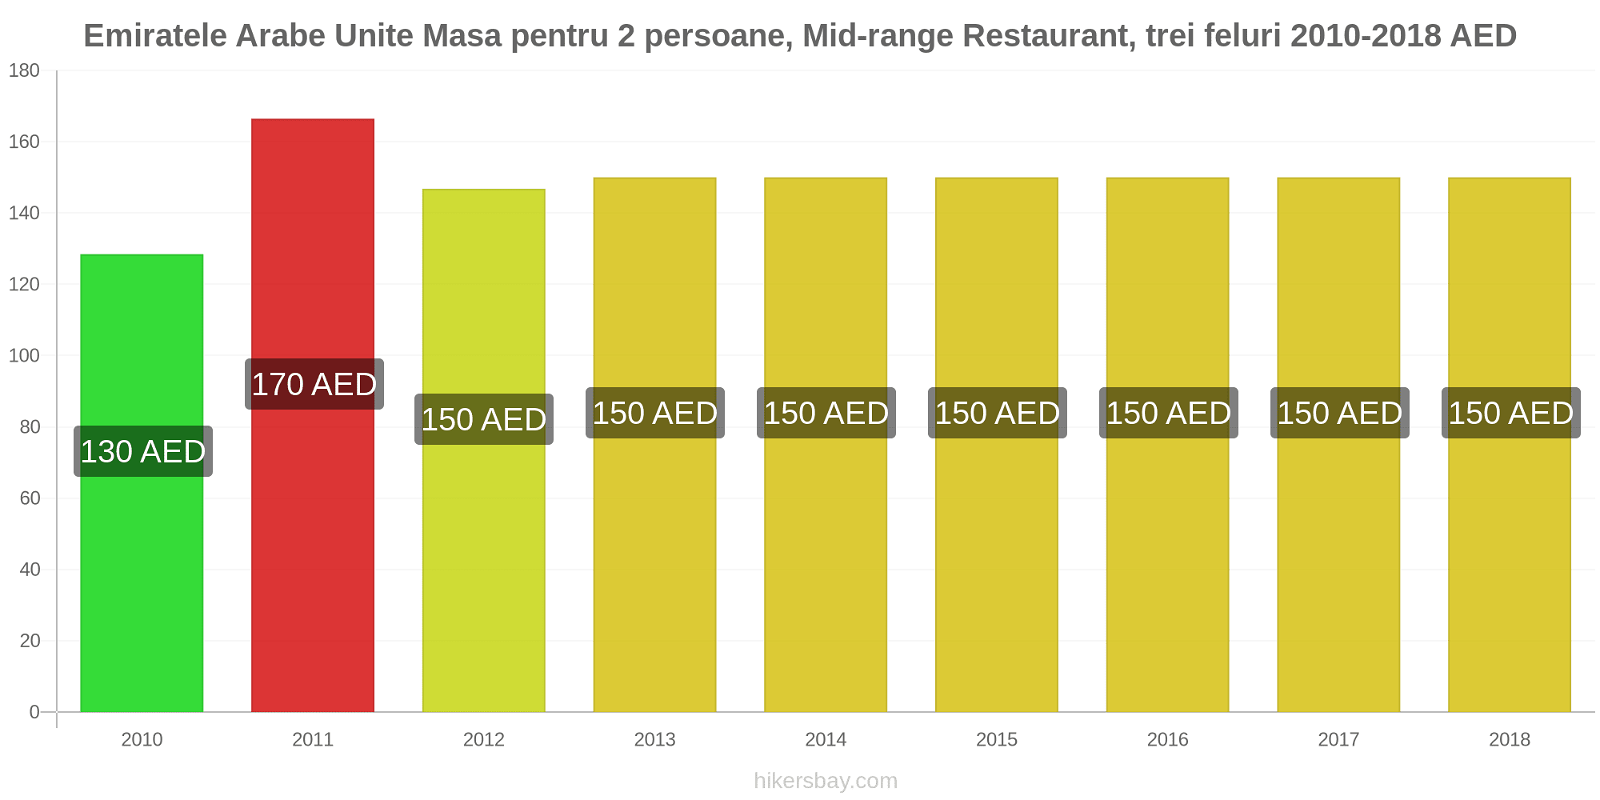 Emiratele Arabe Unite schimbări de prețuri Masă pentru 2 persoane, restaurant de gamă medie, trei feluri de mâncare hikersbay.com